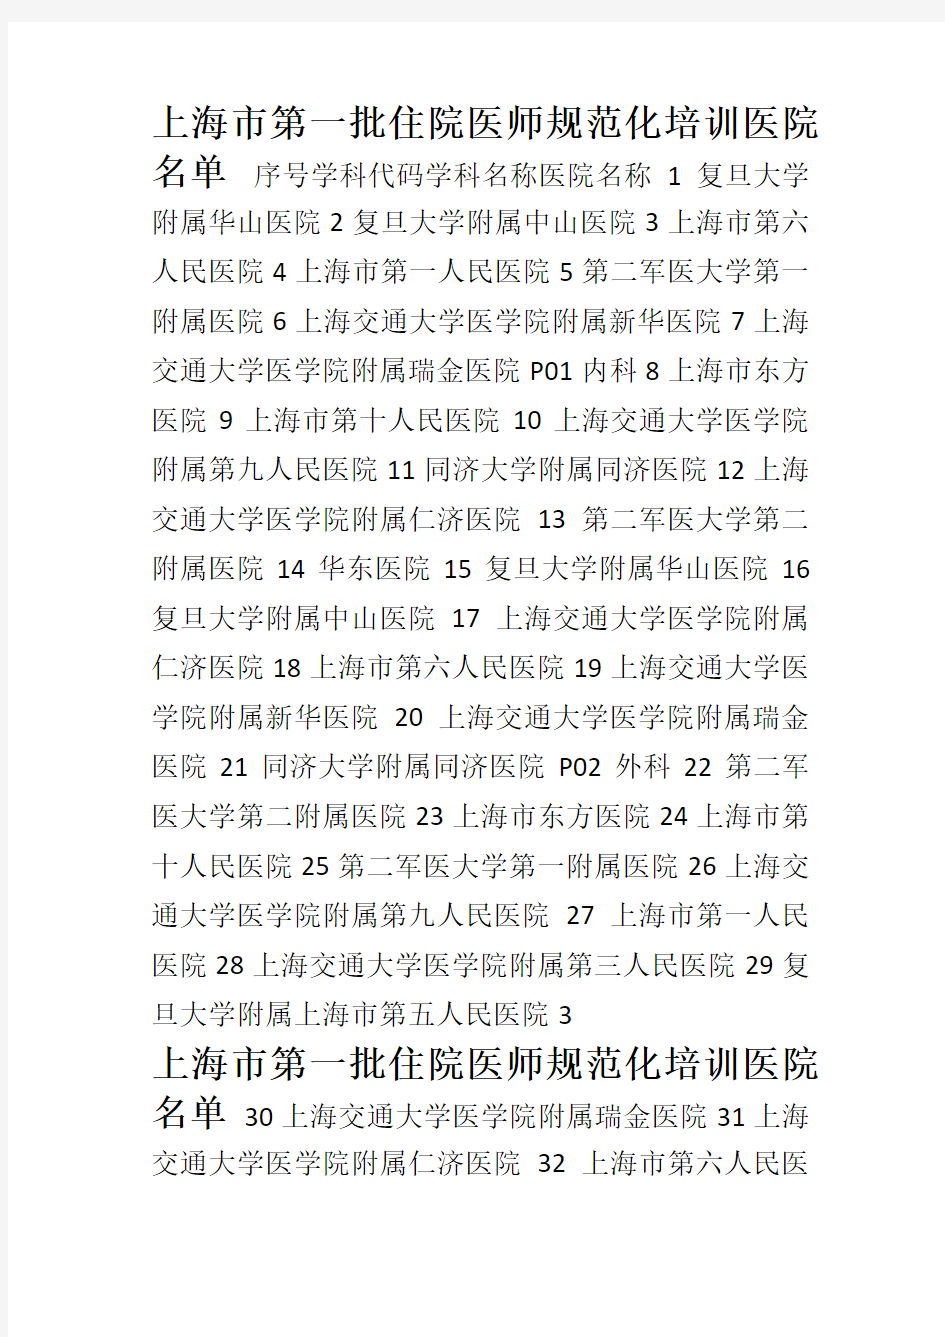 上海市第一批住院医师规范化培训医院名单